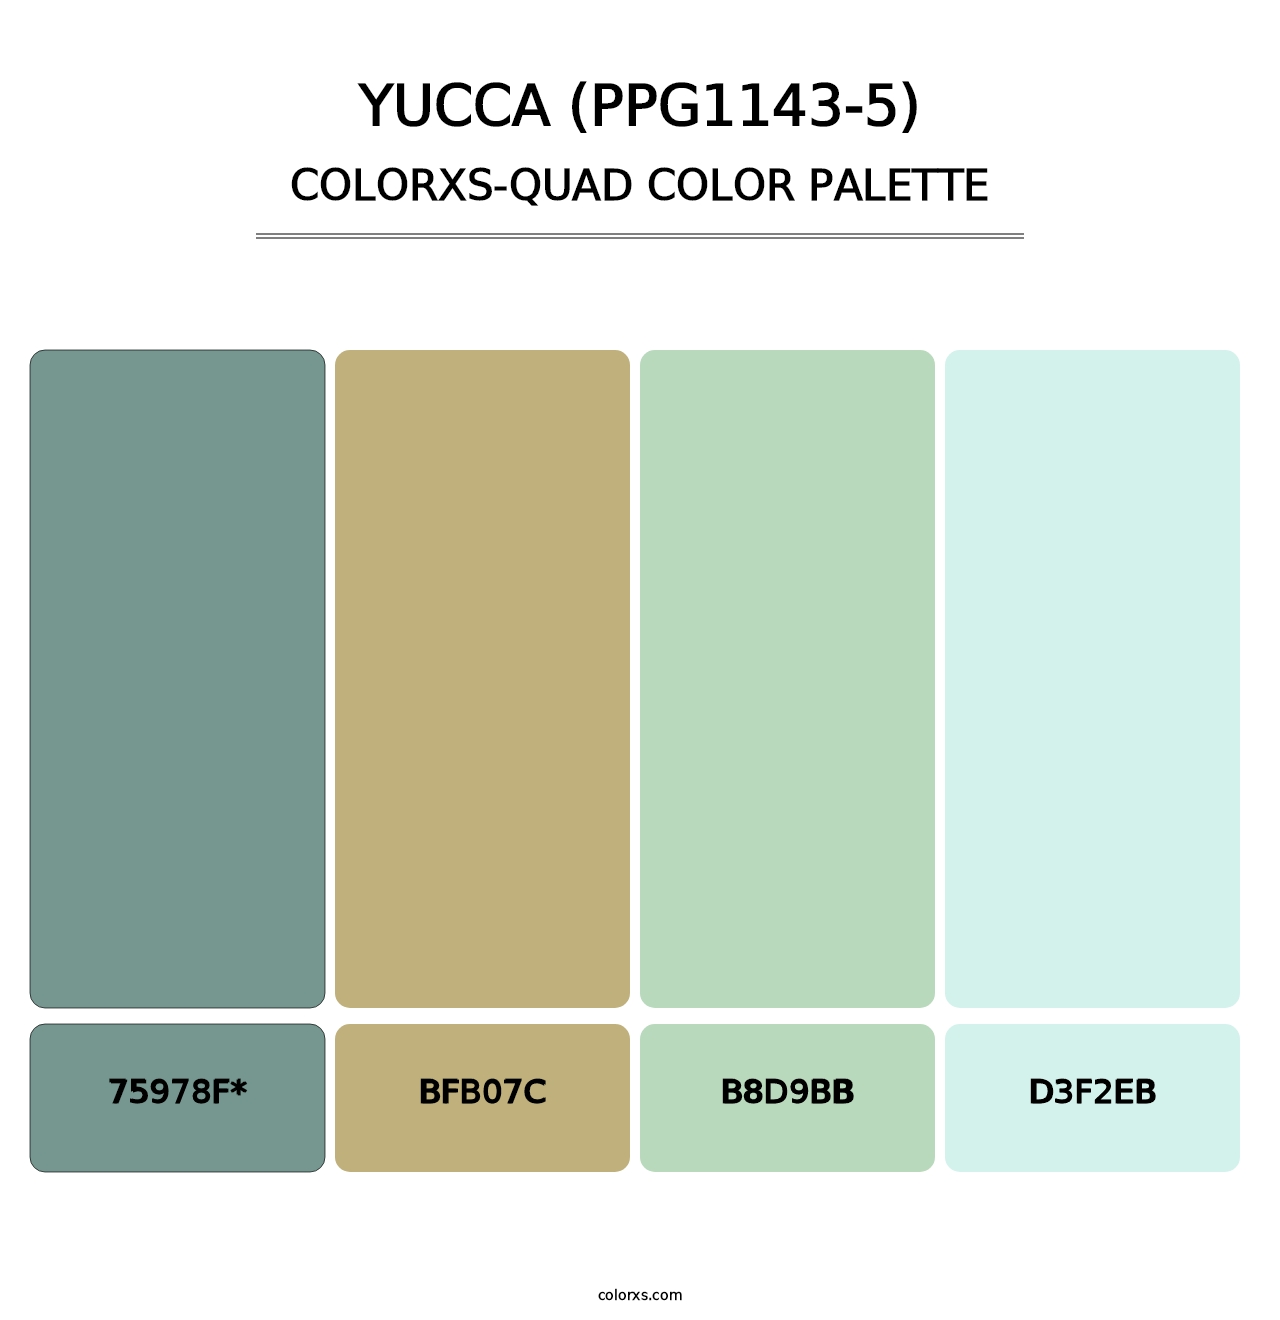 Yucca (PPG1143-5) - Colorxs Quad Palette